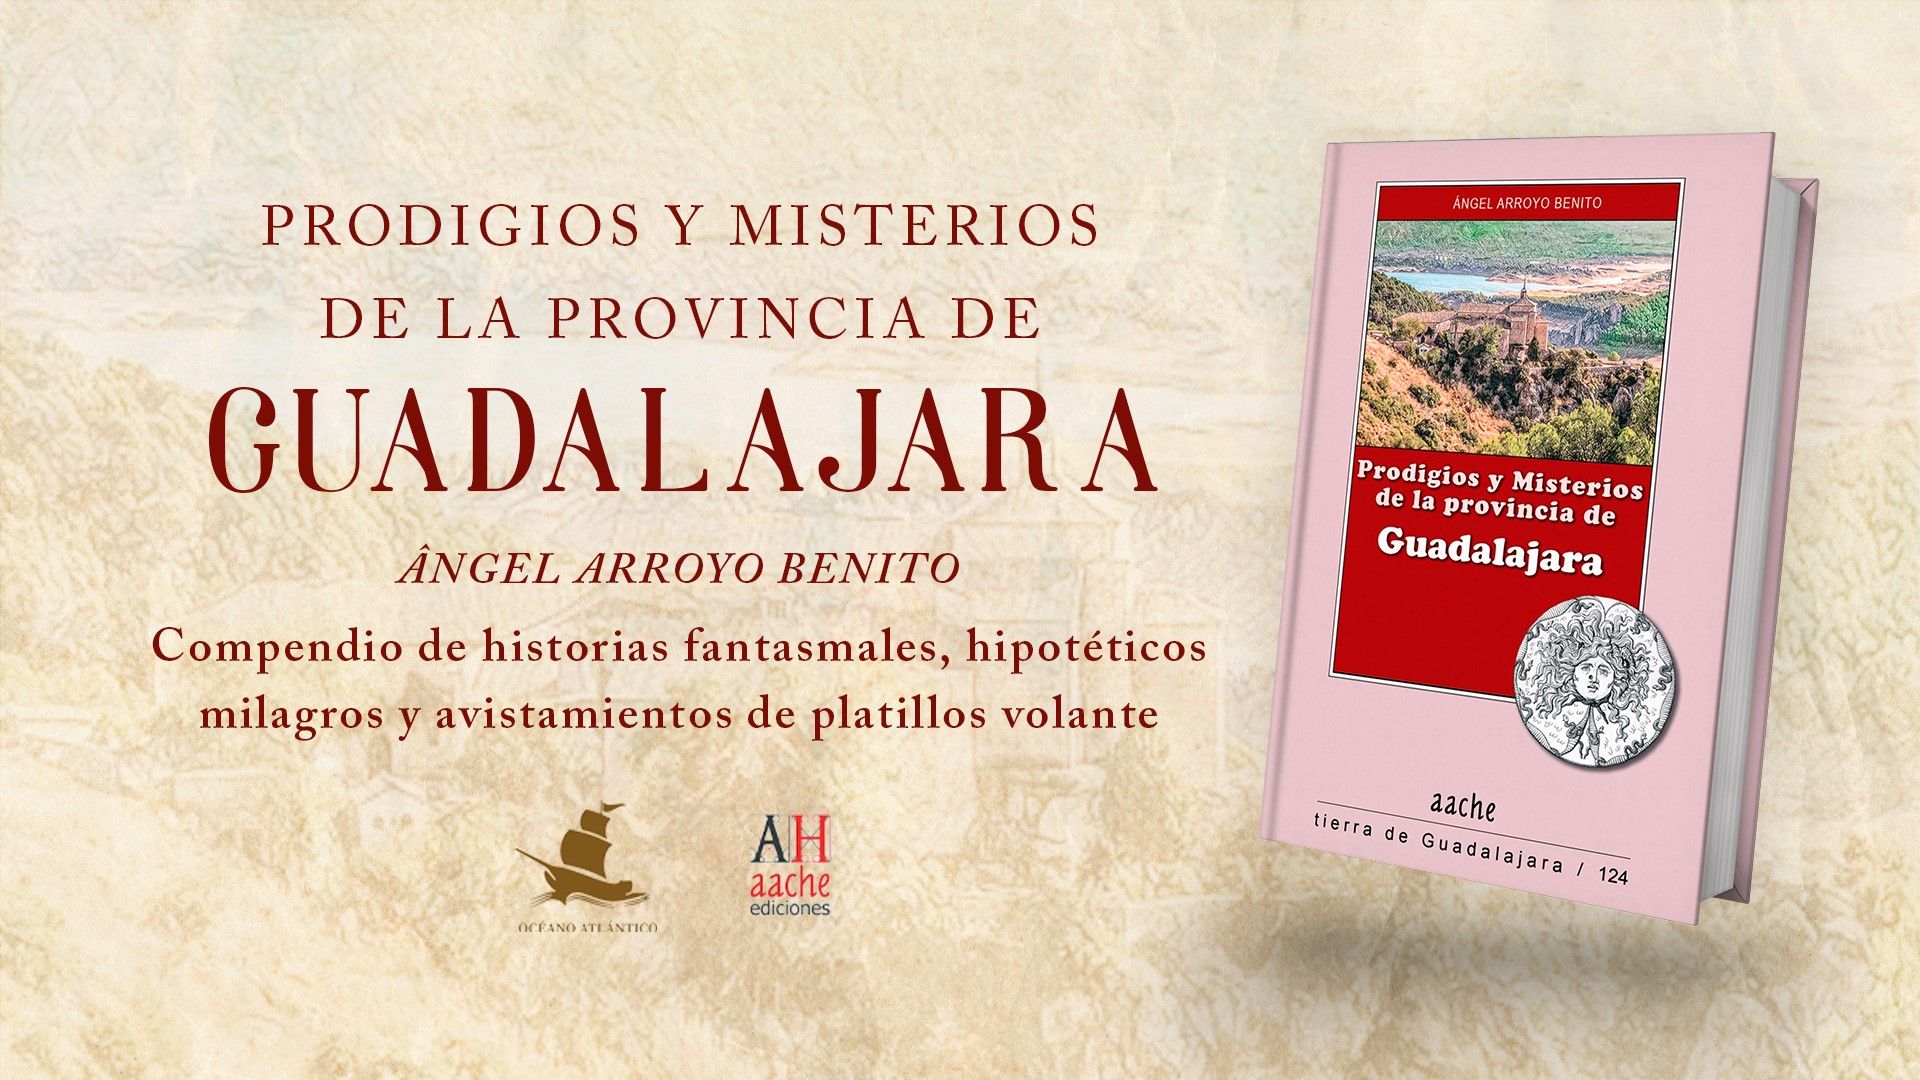 El libro ha sido editado por Aache y Océano Atlántico Editores//Imagen: OAE.